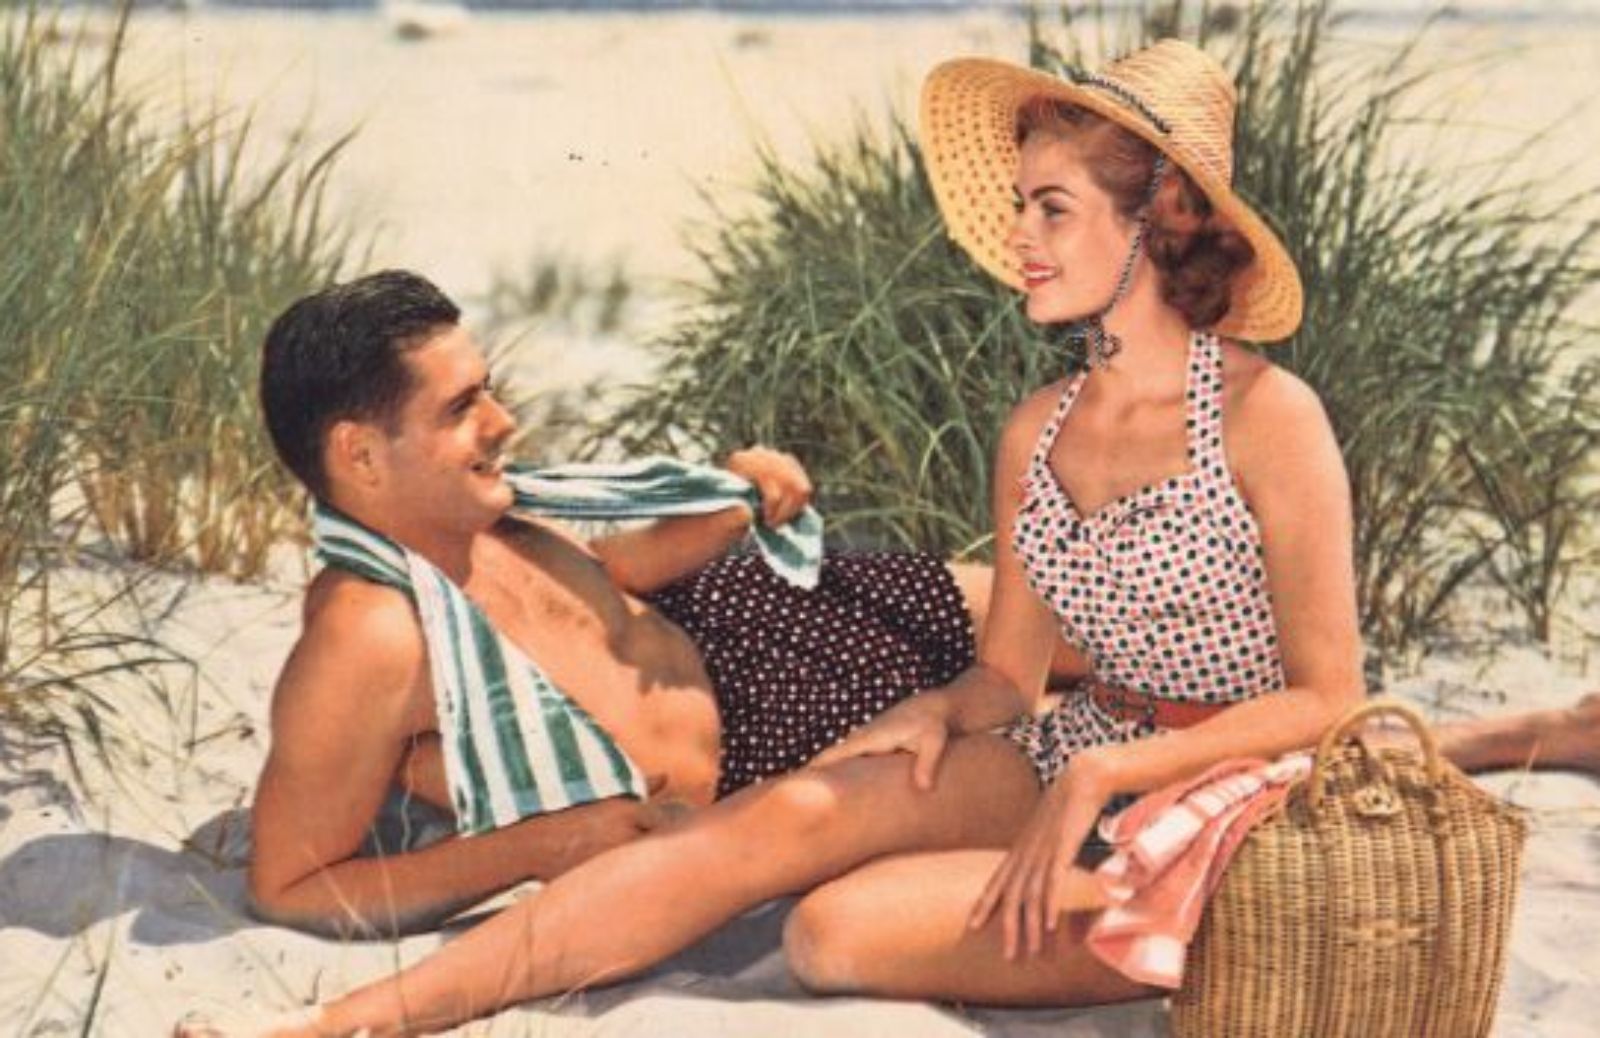 La moda degli anni ’50: dallo stile bon ton al look delle pin up